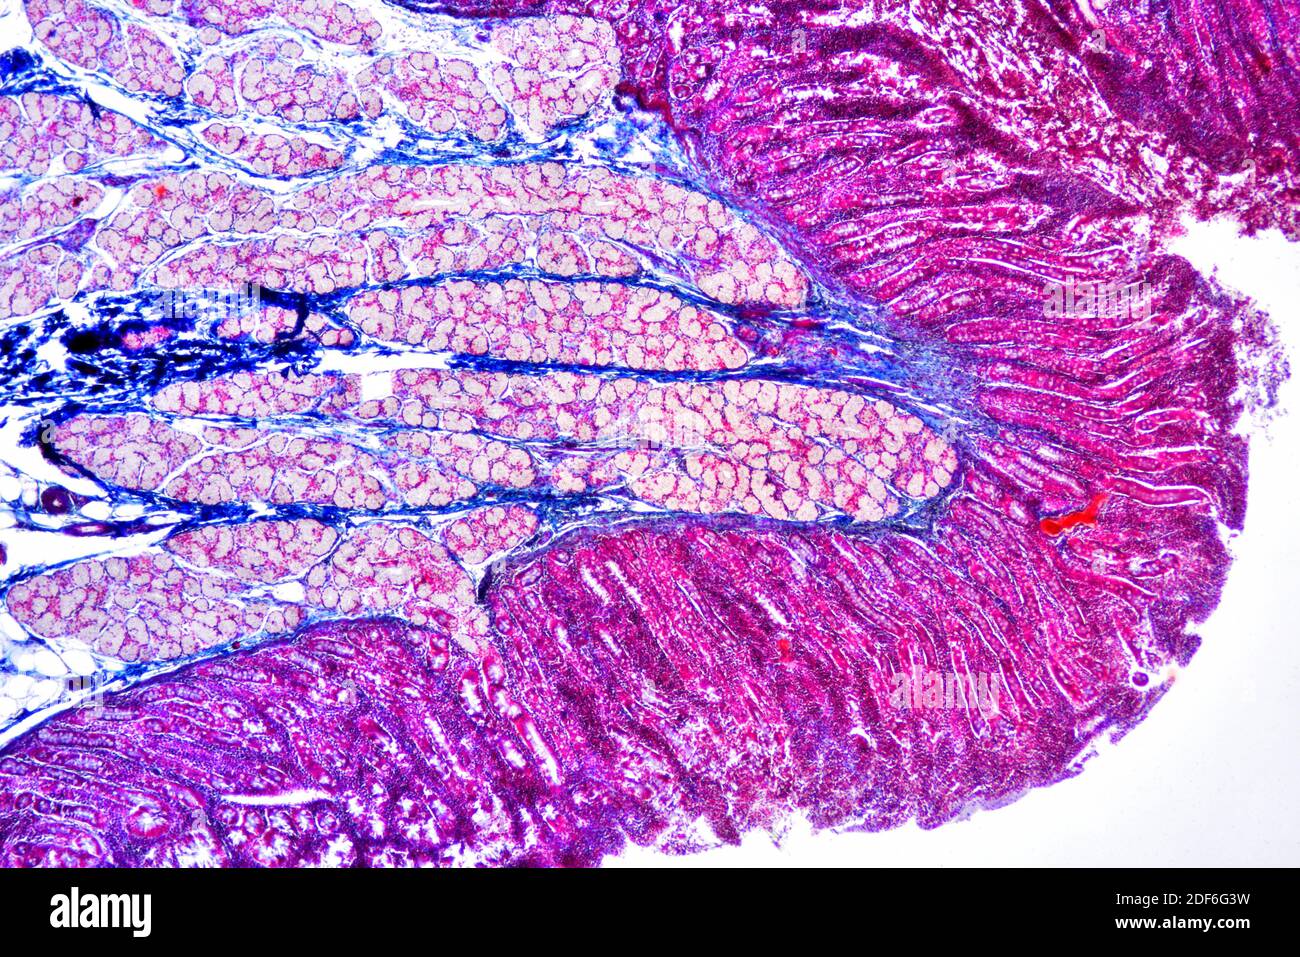 Duodeno umano (intestino tenue) che mostra mucosa villosa, sottomucosa, ghiandole Brunner e ghiandole duodenali. Microscopio ottico X40. Foto Stock